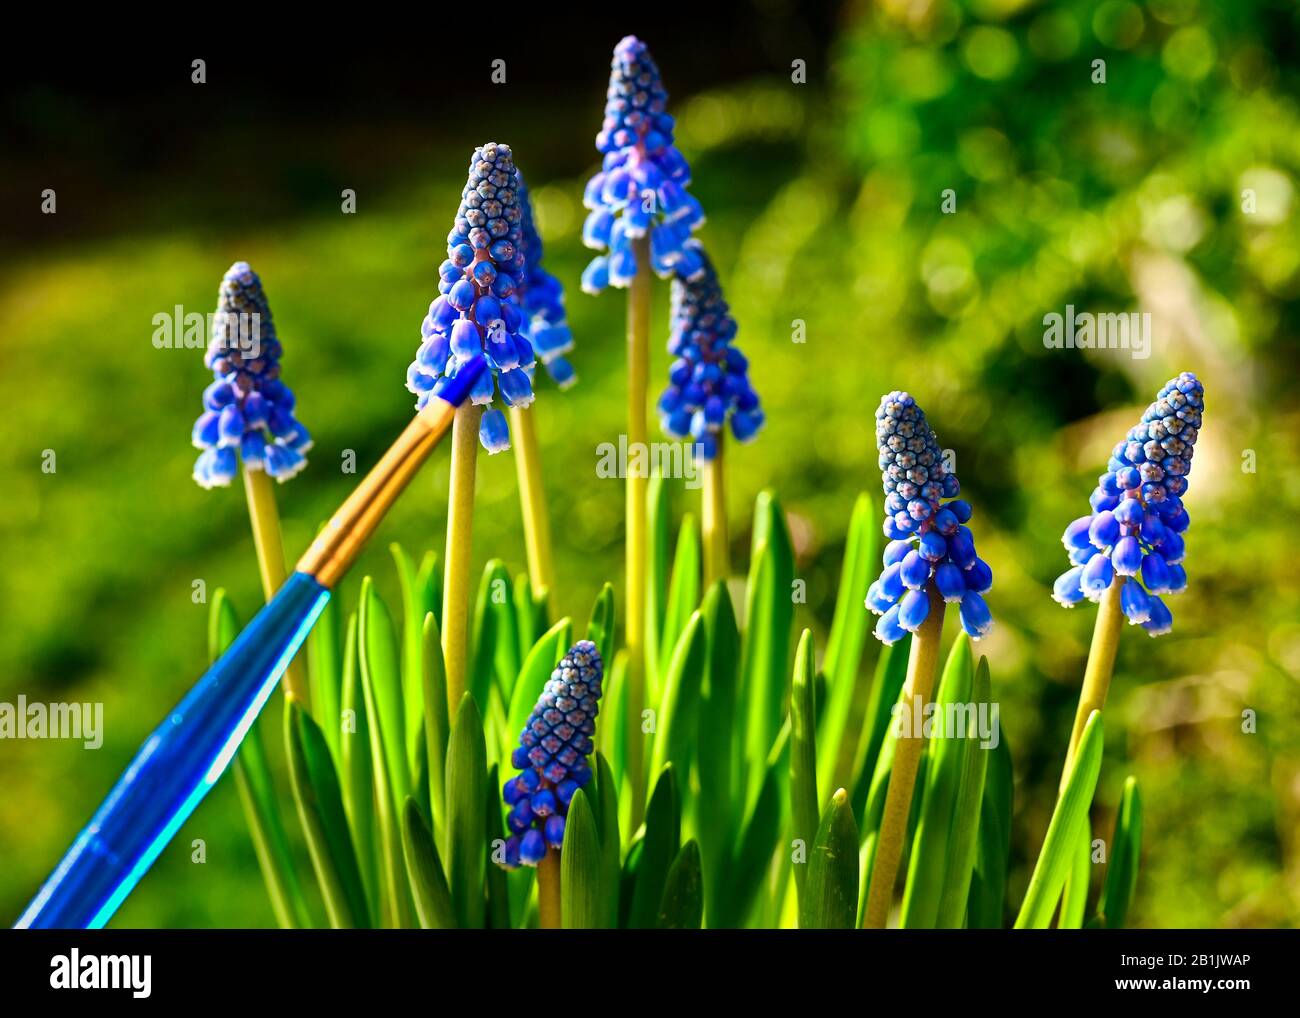 Des hyacinthes de raisin pourpre au soleil. Une brosse bleue symbolise les couleurs fortes de la nature. Banque D'Images